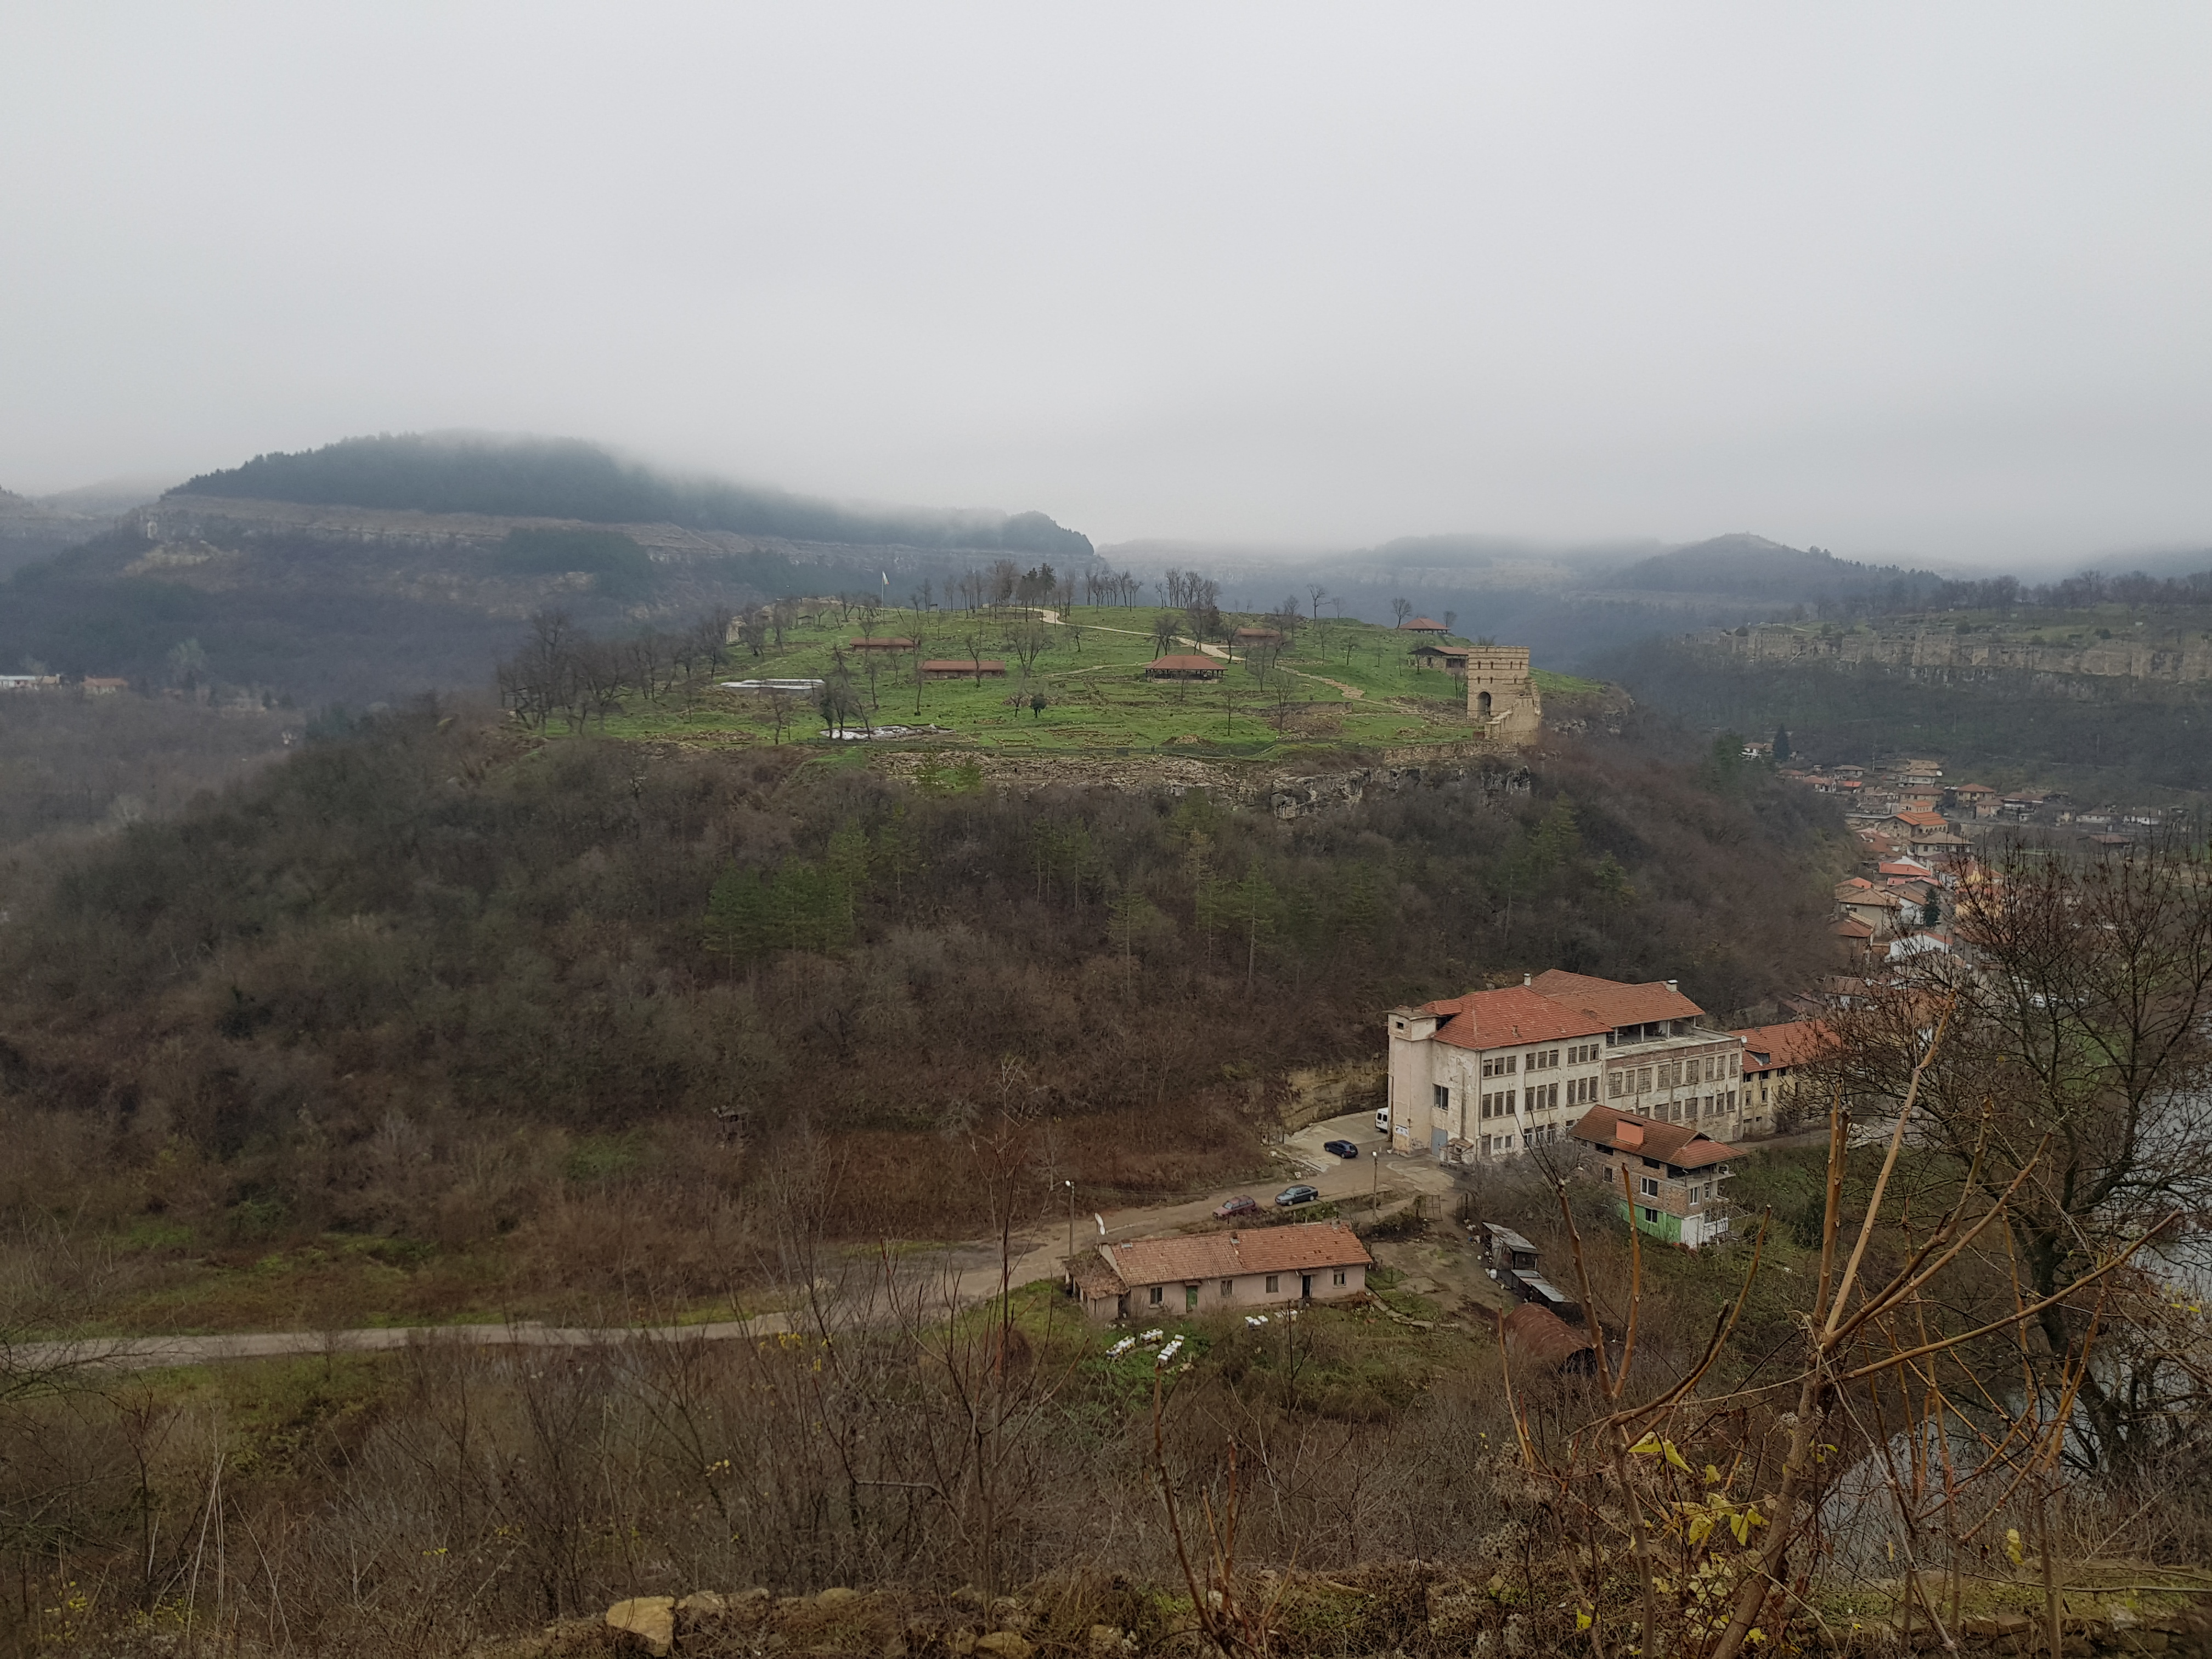 Doua zile in Veliko Tarnovo